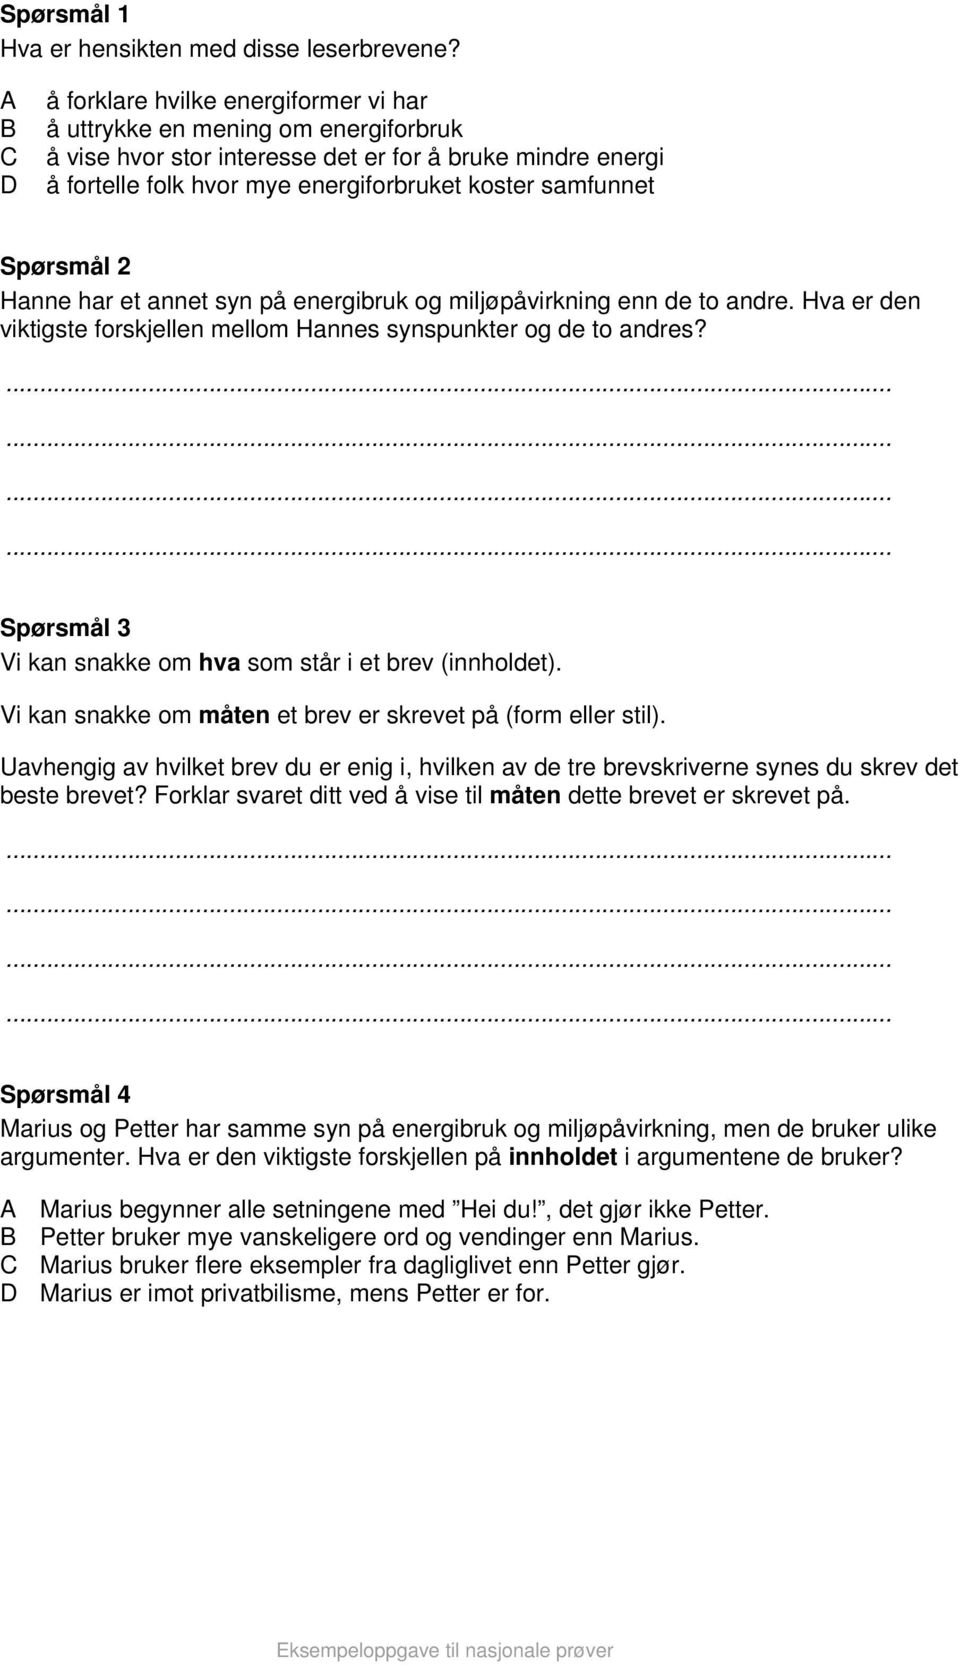 Nasjonale prøver. Lesing 8. trinn Eksempeloppgave 1. Bokmål - PDF Free  Download